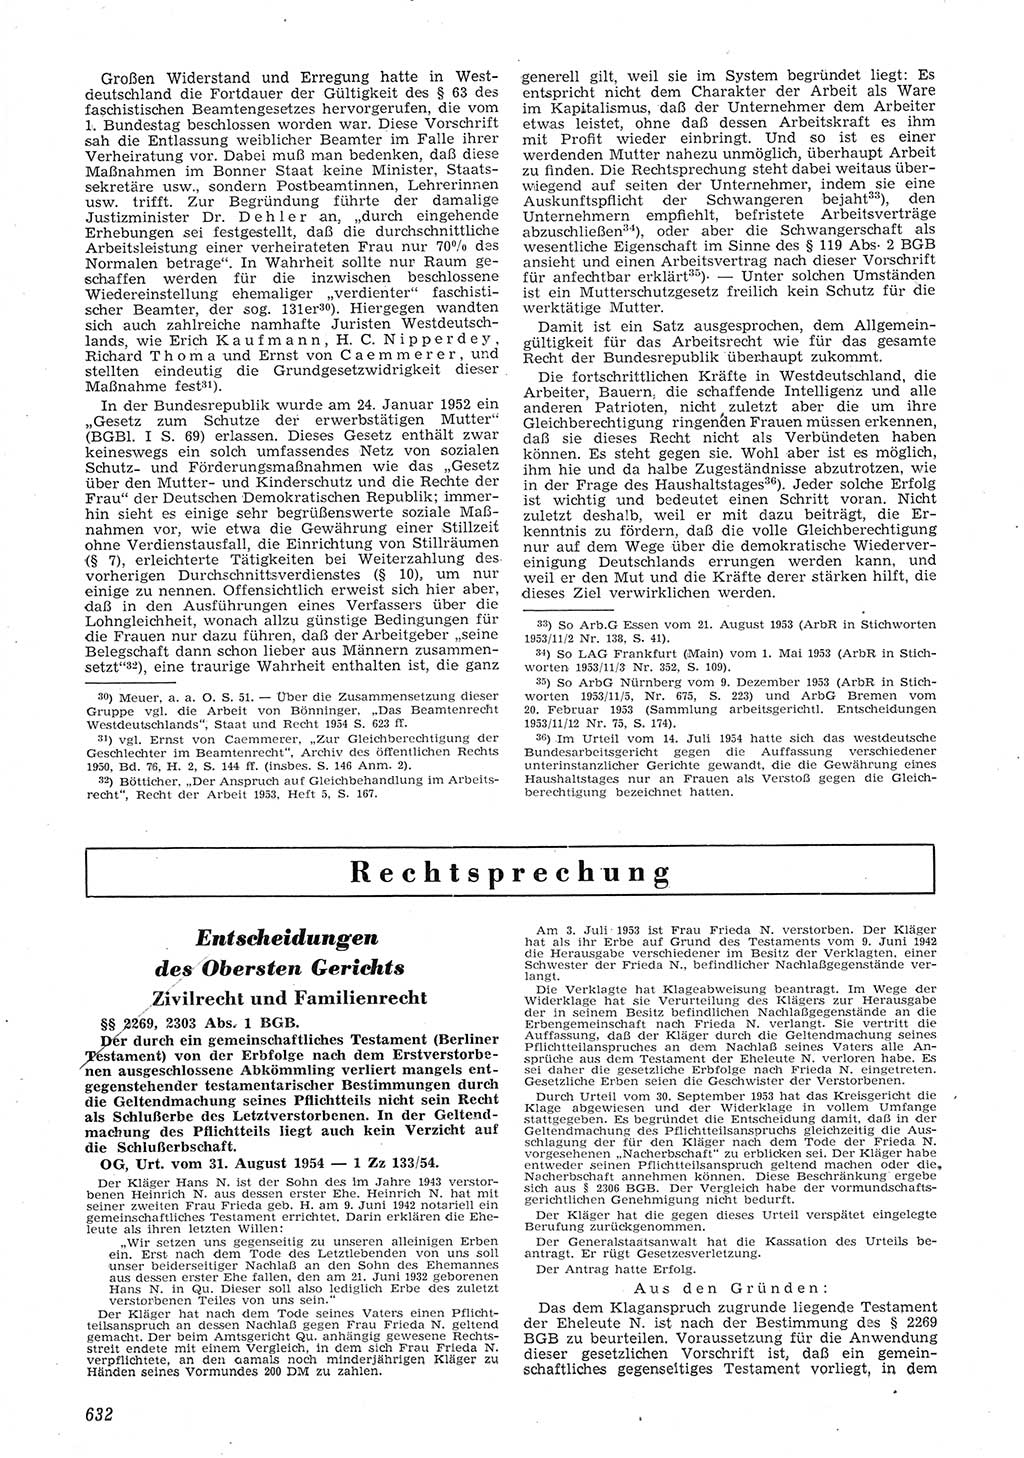 Neue Justiz (NJ), Zeitschrift für Recht und Rechtswissenschaft [Deutsche Demokratische Republik (DDR)], 8. Jahrgang 1954, Seite 632 (NJ DDR 1954, S. 632)